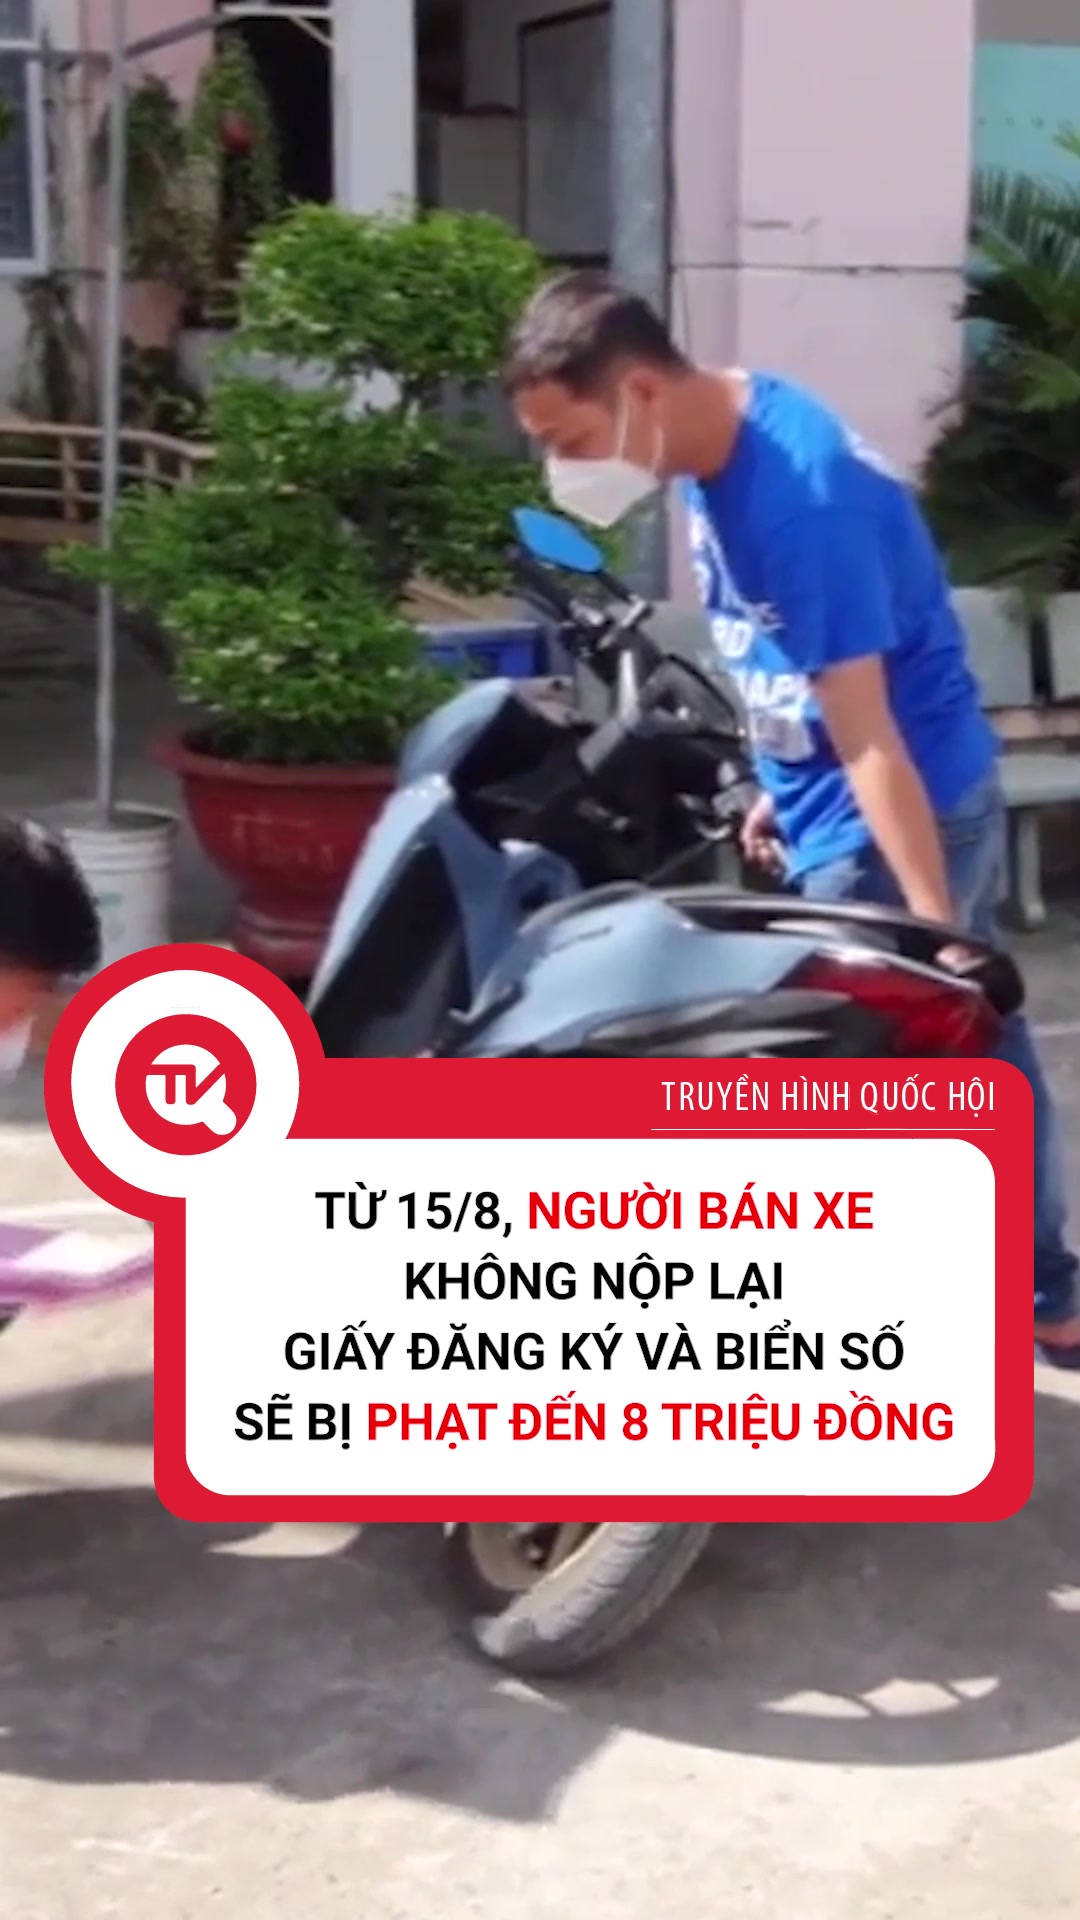 Truyền hình Quốc hội Việt Nam